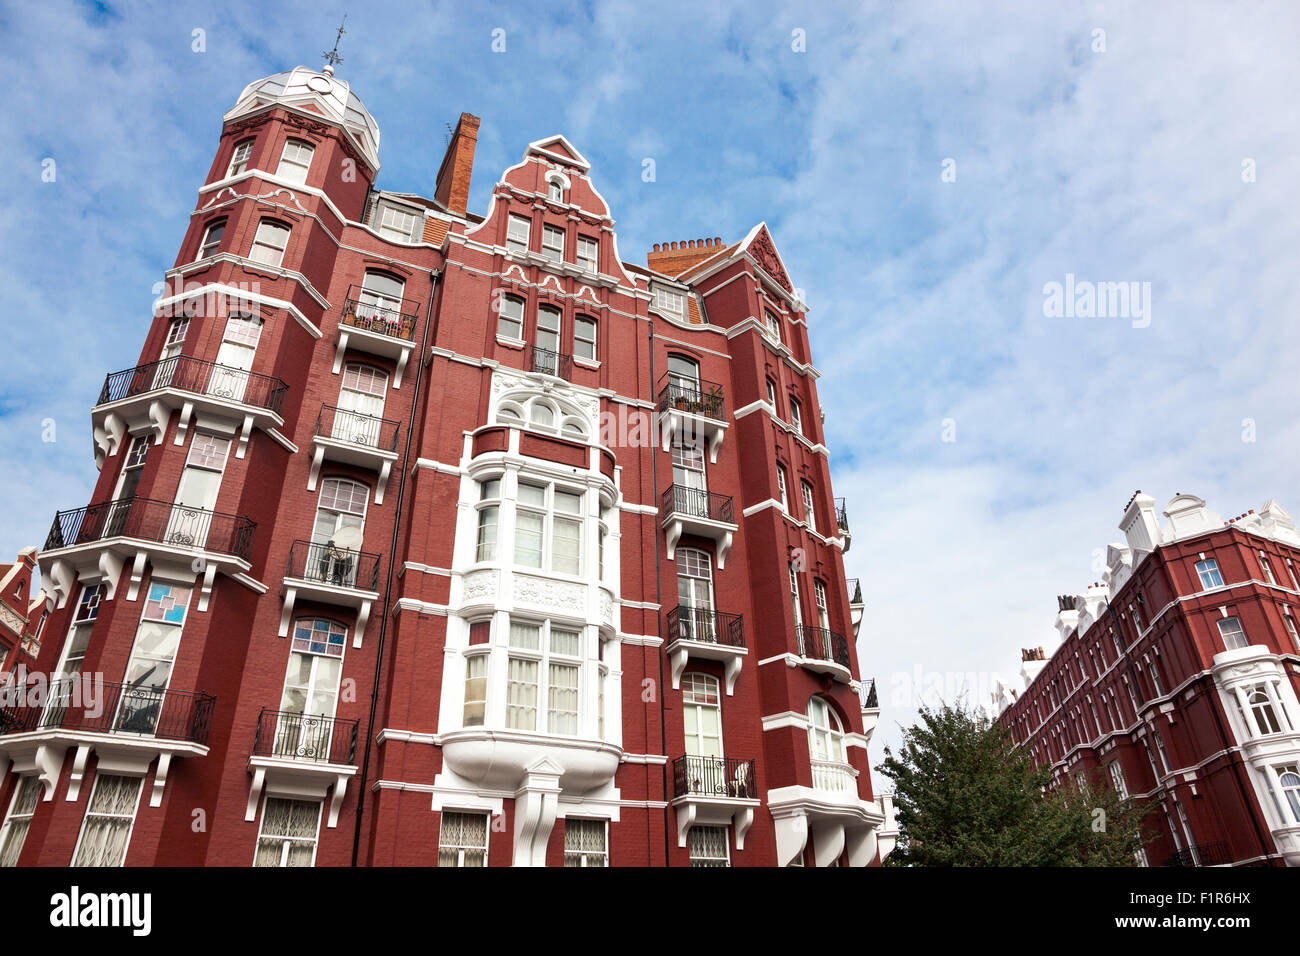 Oxford und Cambridge Villen - schöne Zeit Wohnblocks auf alten Marylebone Road, London, UK Stockfoto